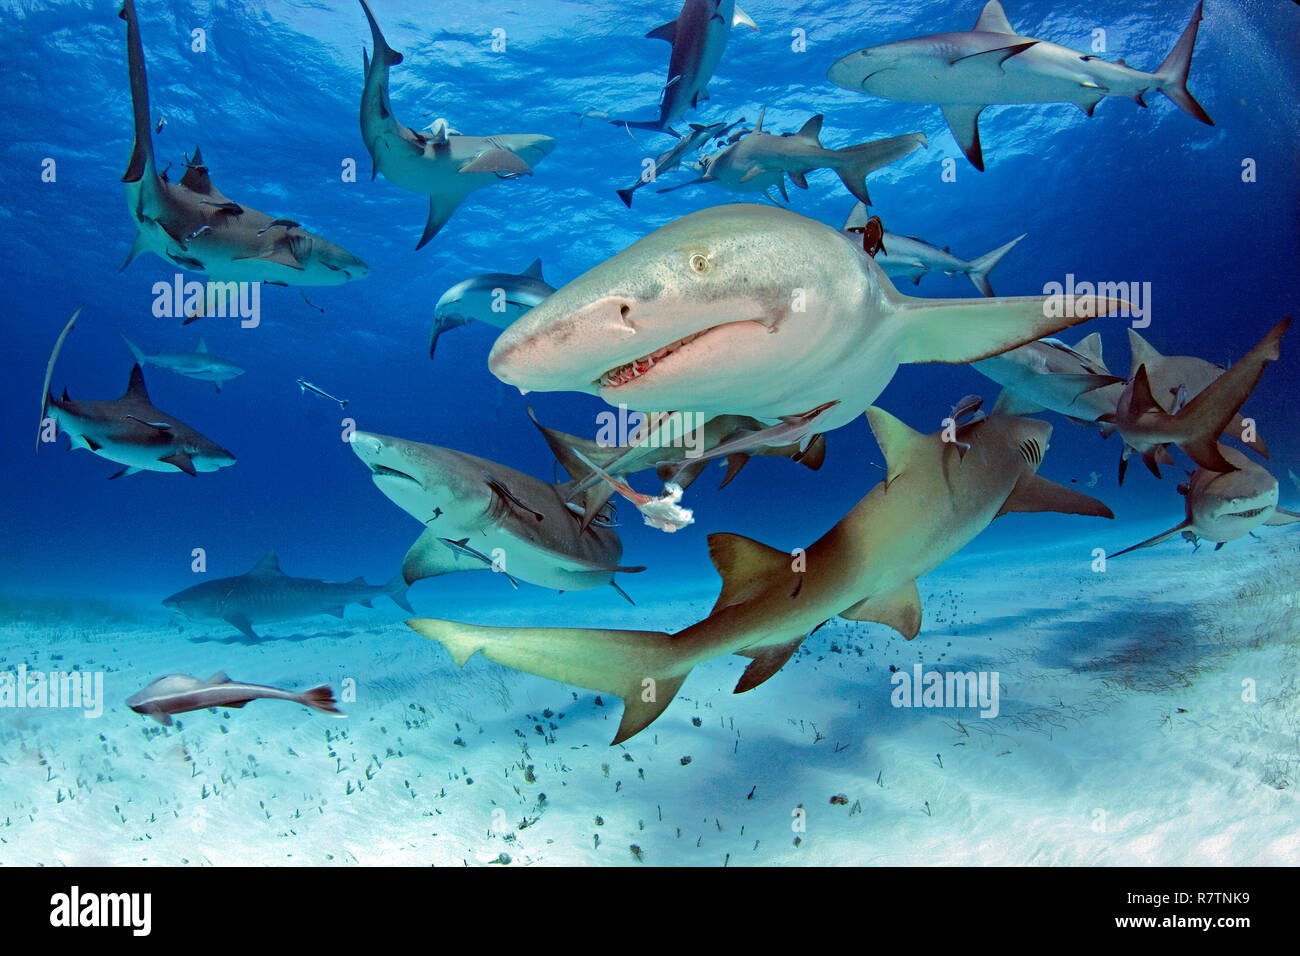 Lemon shark (Negaprion brevirostris), group over sandy bottom, Bahama Banks, Bahamas Stock Photo